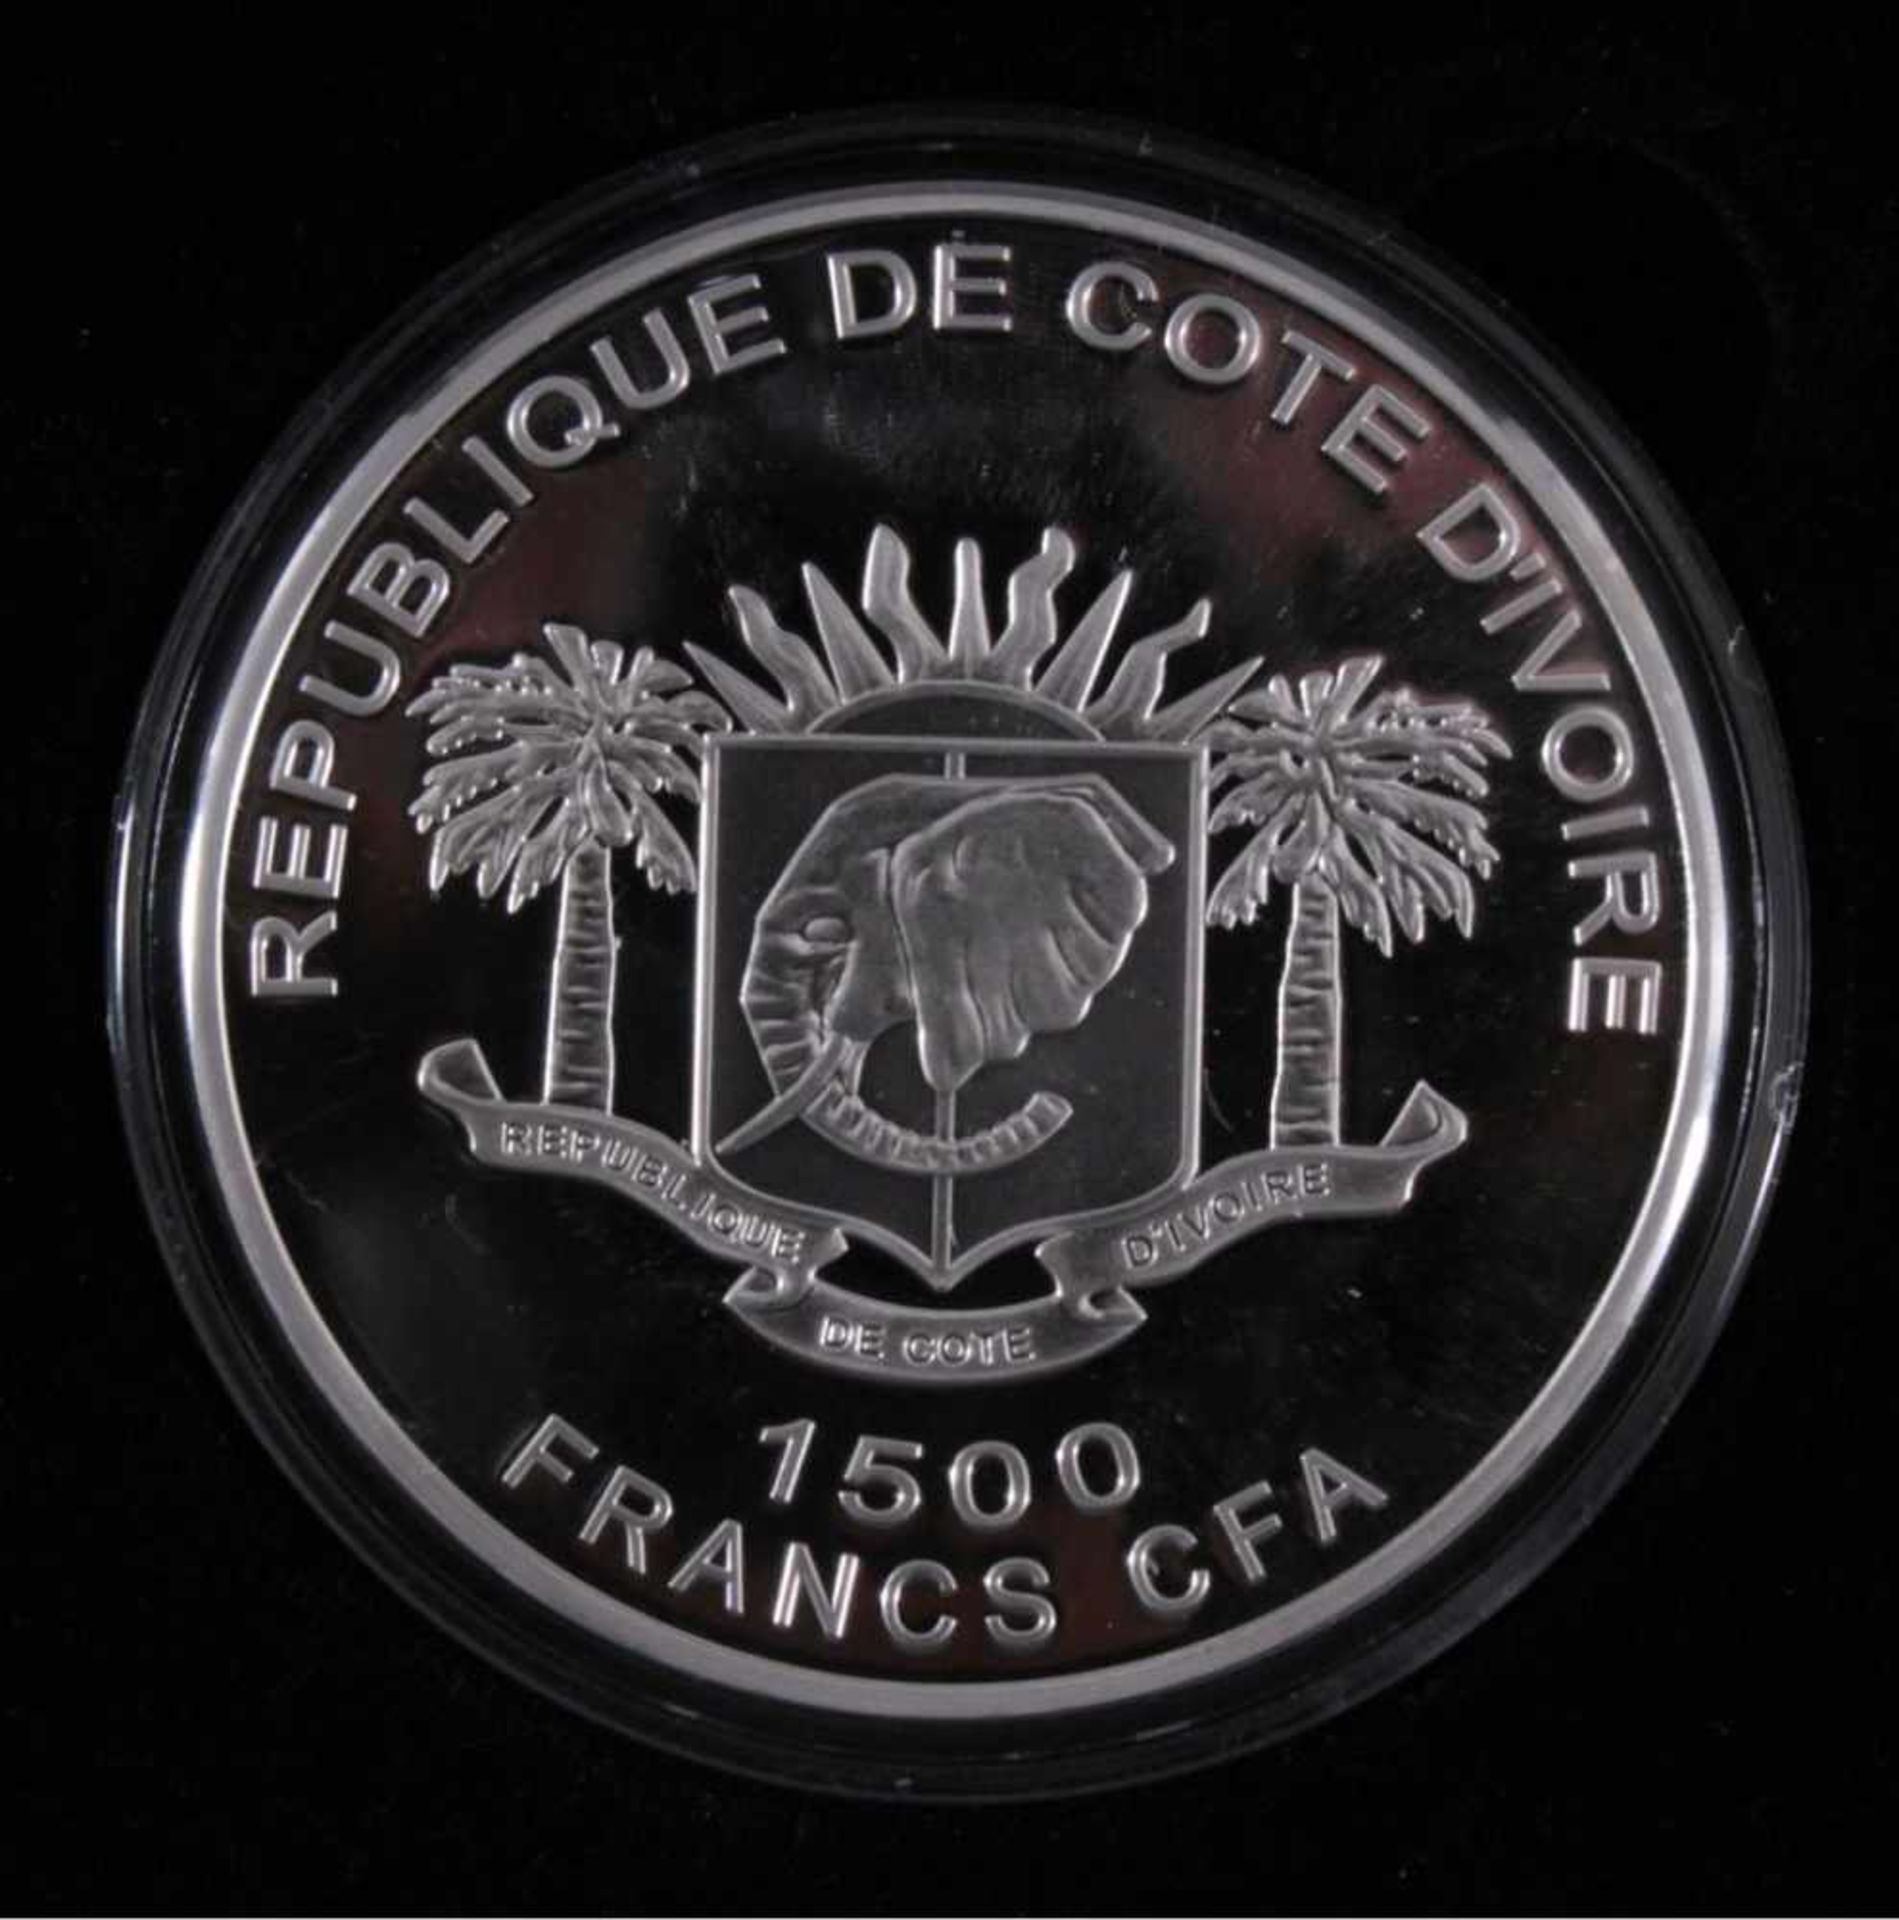 Elfenbeinküste, 1500 France 2010, die sieben WeltwunderRepublique de Cote D IVoire, 999/000 - Bild 2 aus 3